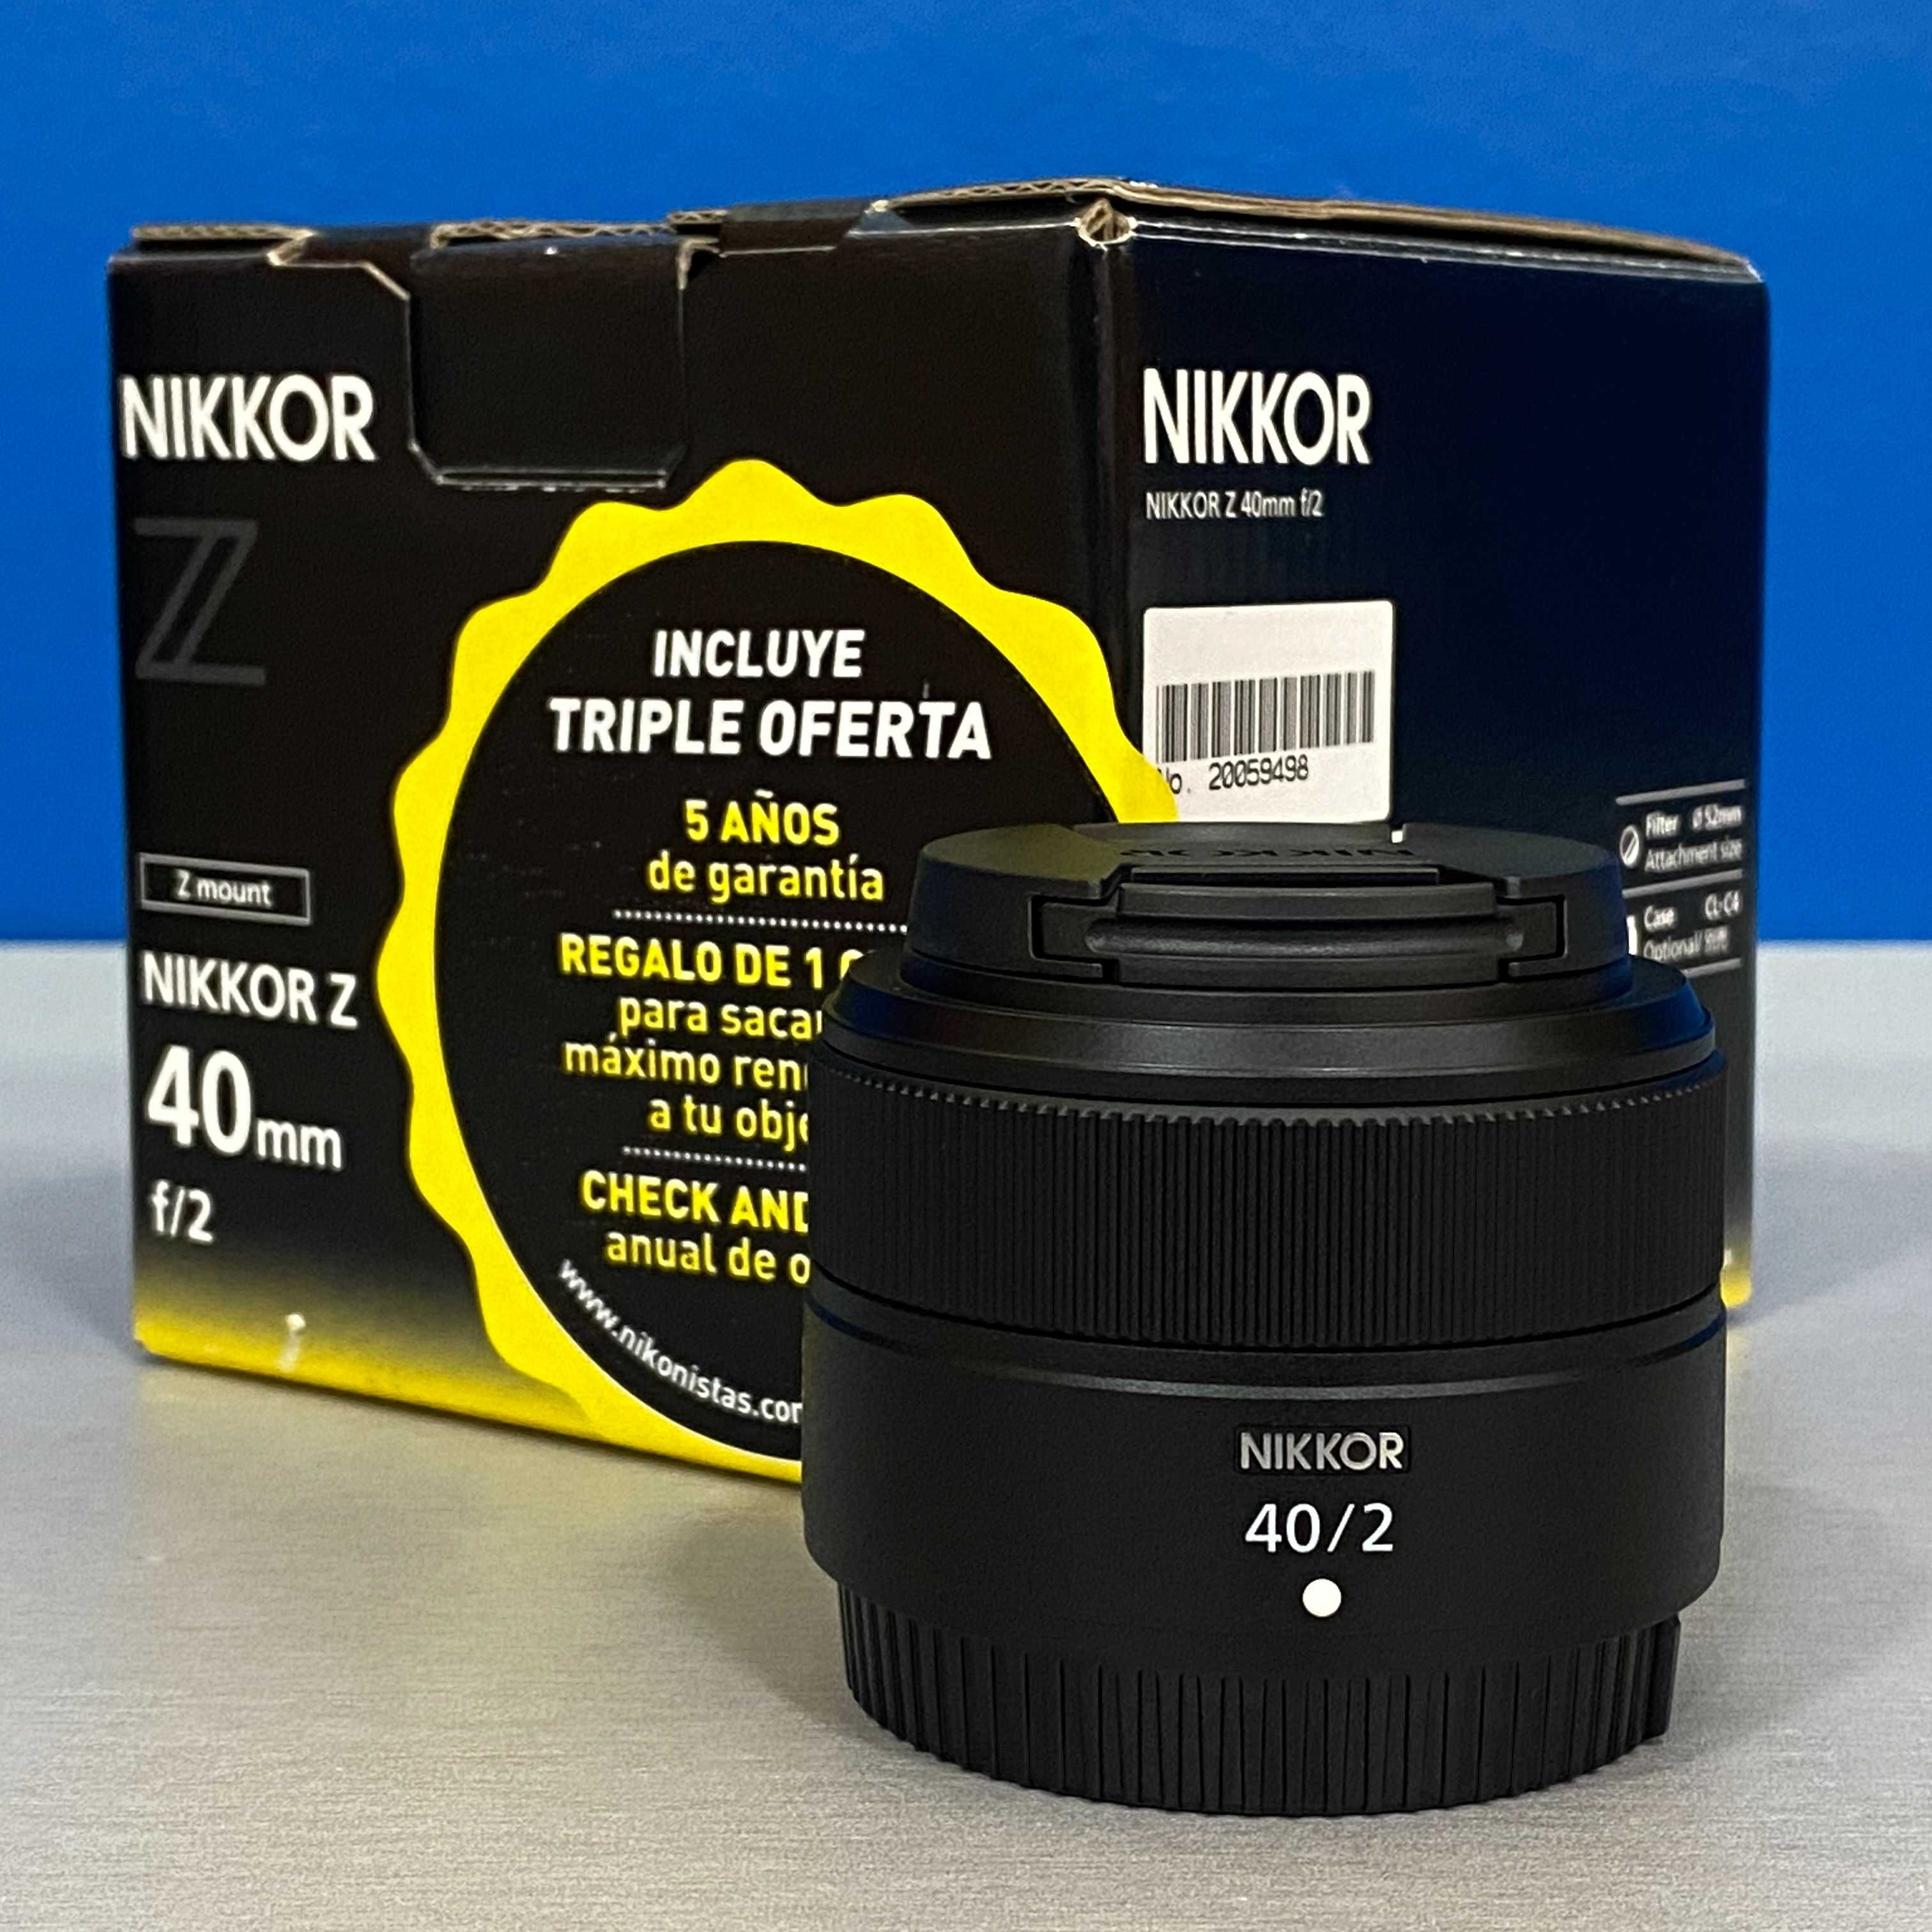 Nikon Nikkor Z 40mm f/2